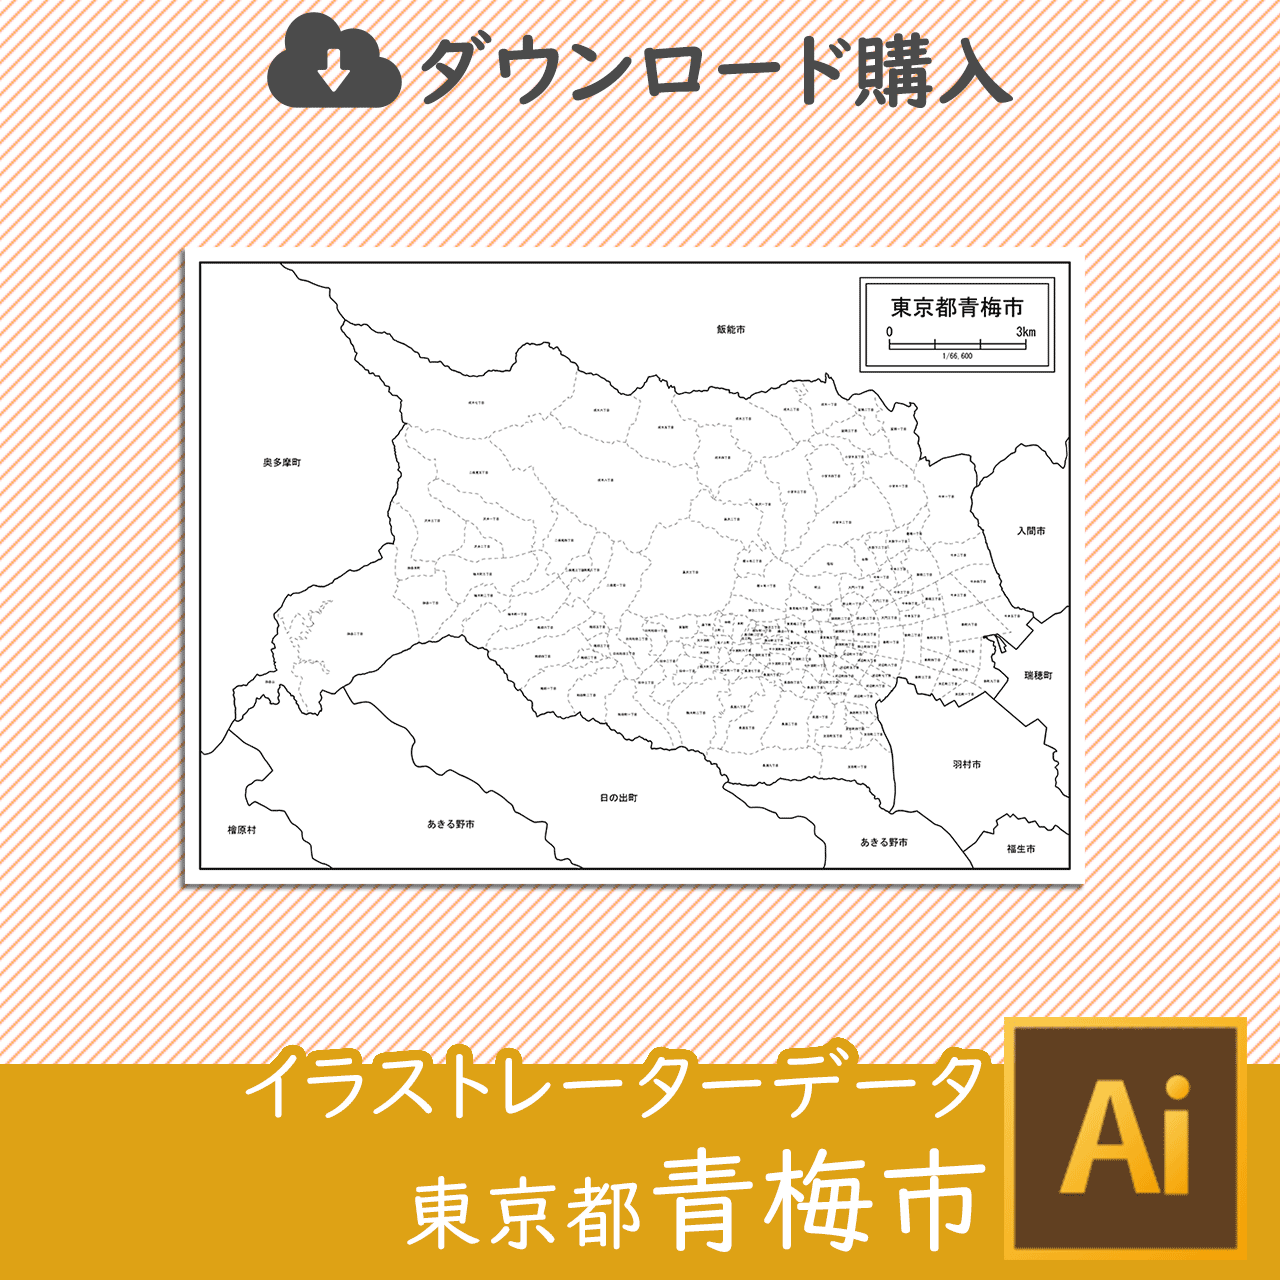 青梅市の白地図のサムネイル画像